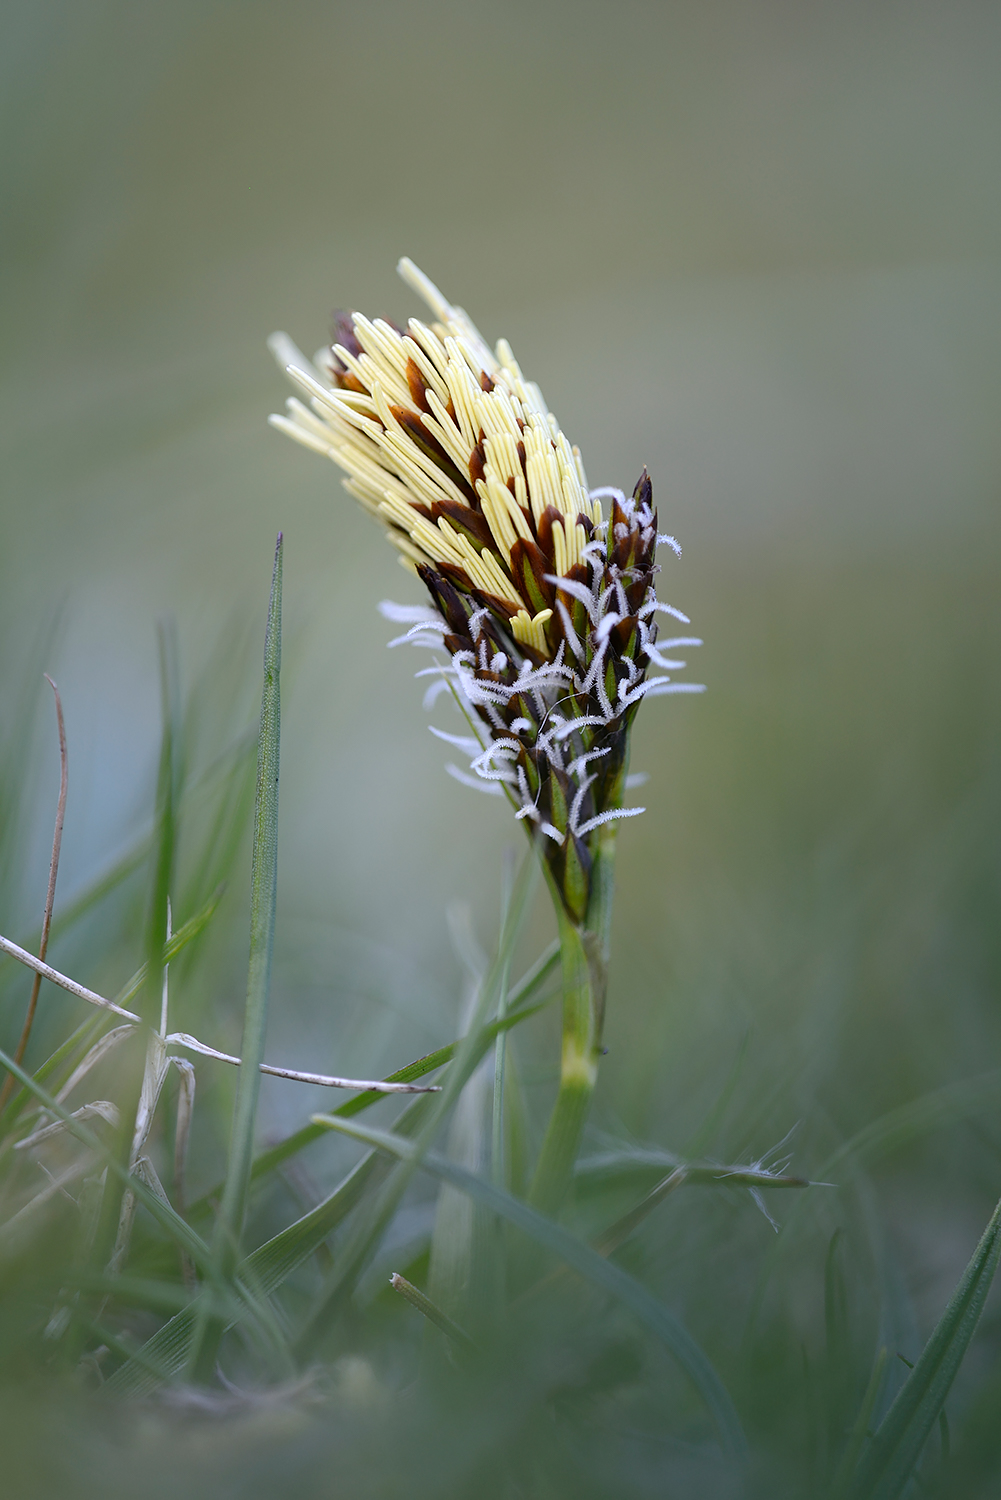 Bloeiende voorjaarszegge (Carex caryophyllea) tussen het gras van de duingraslanden in het Noordhollands Duinreservaat bij Bakkum.